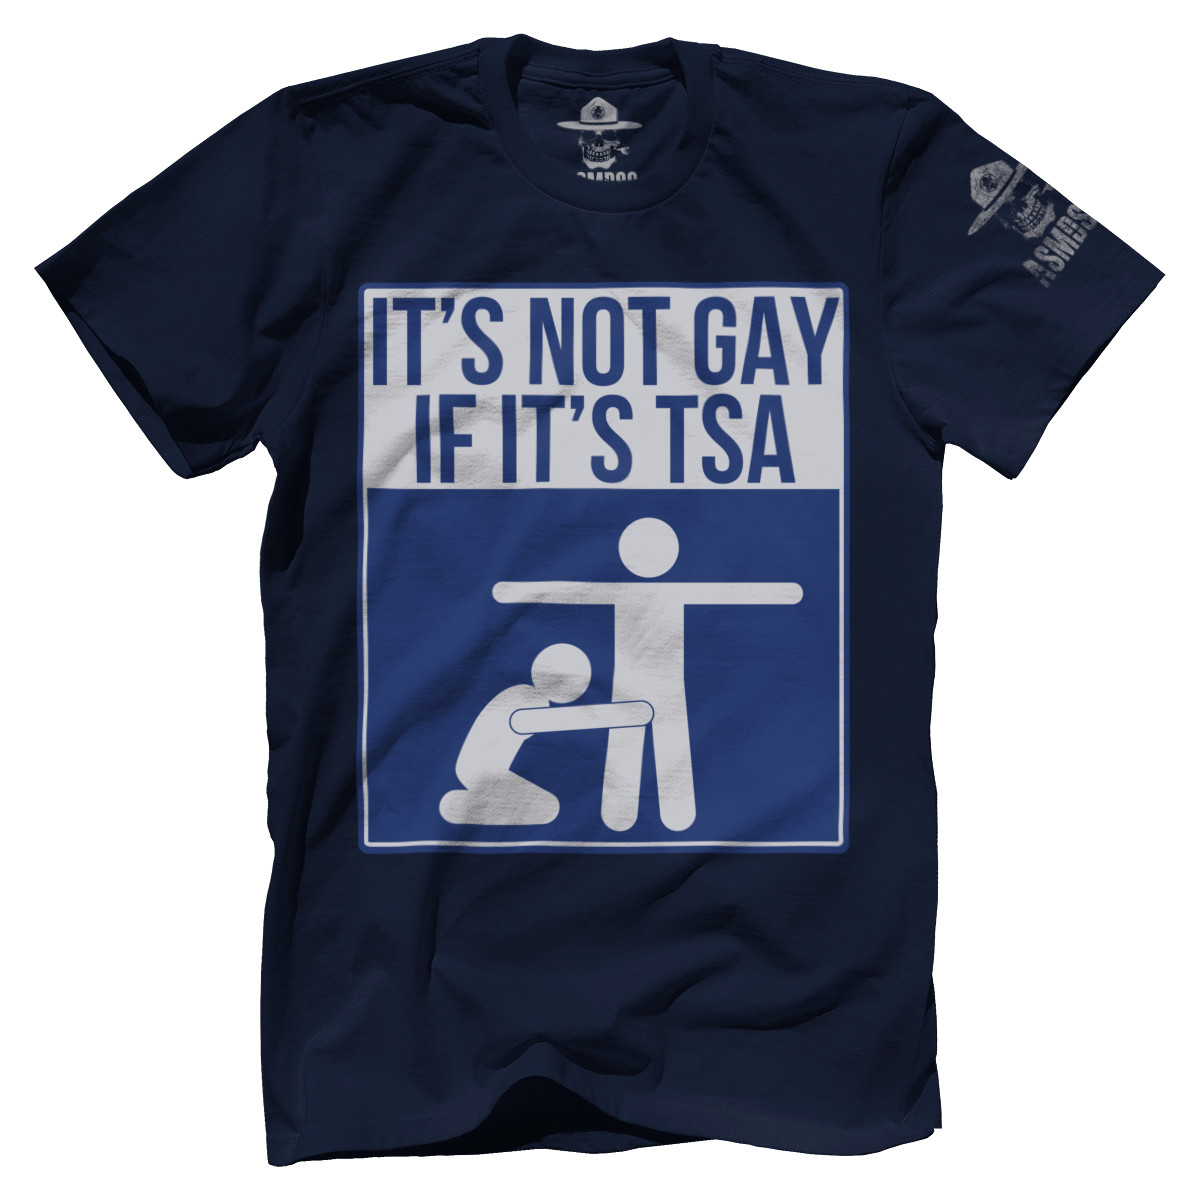 im gay meme shirts